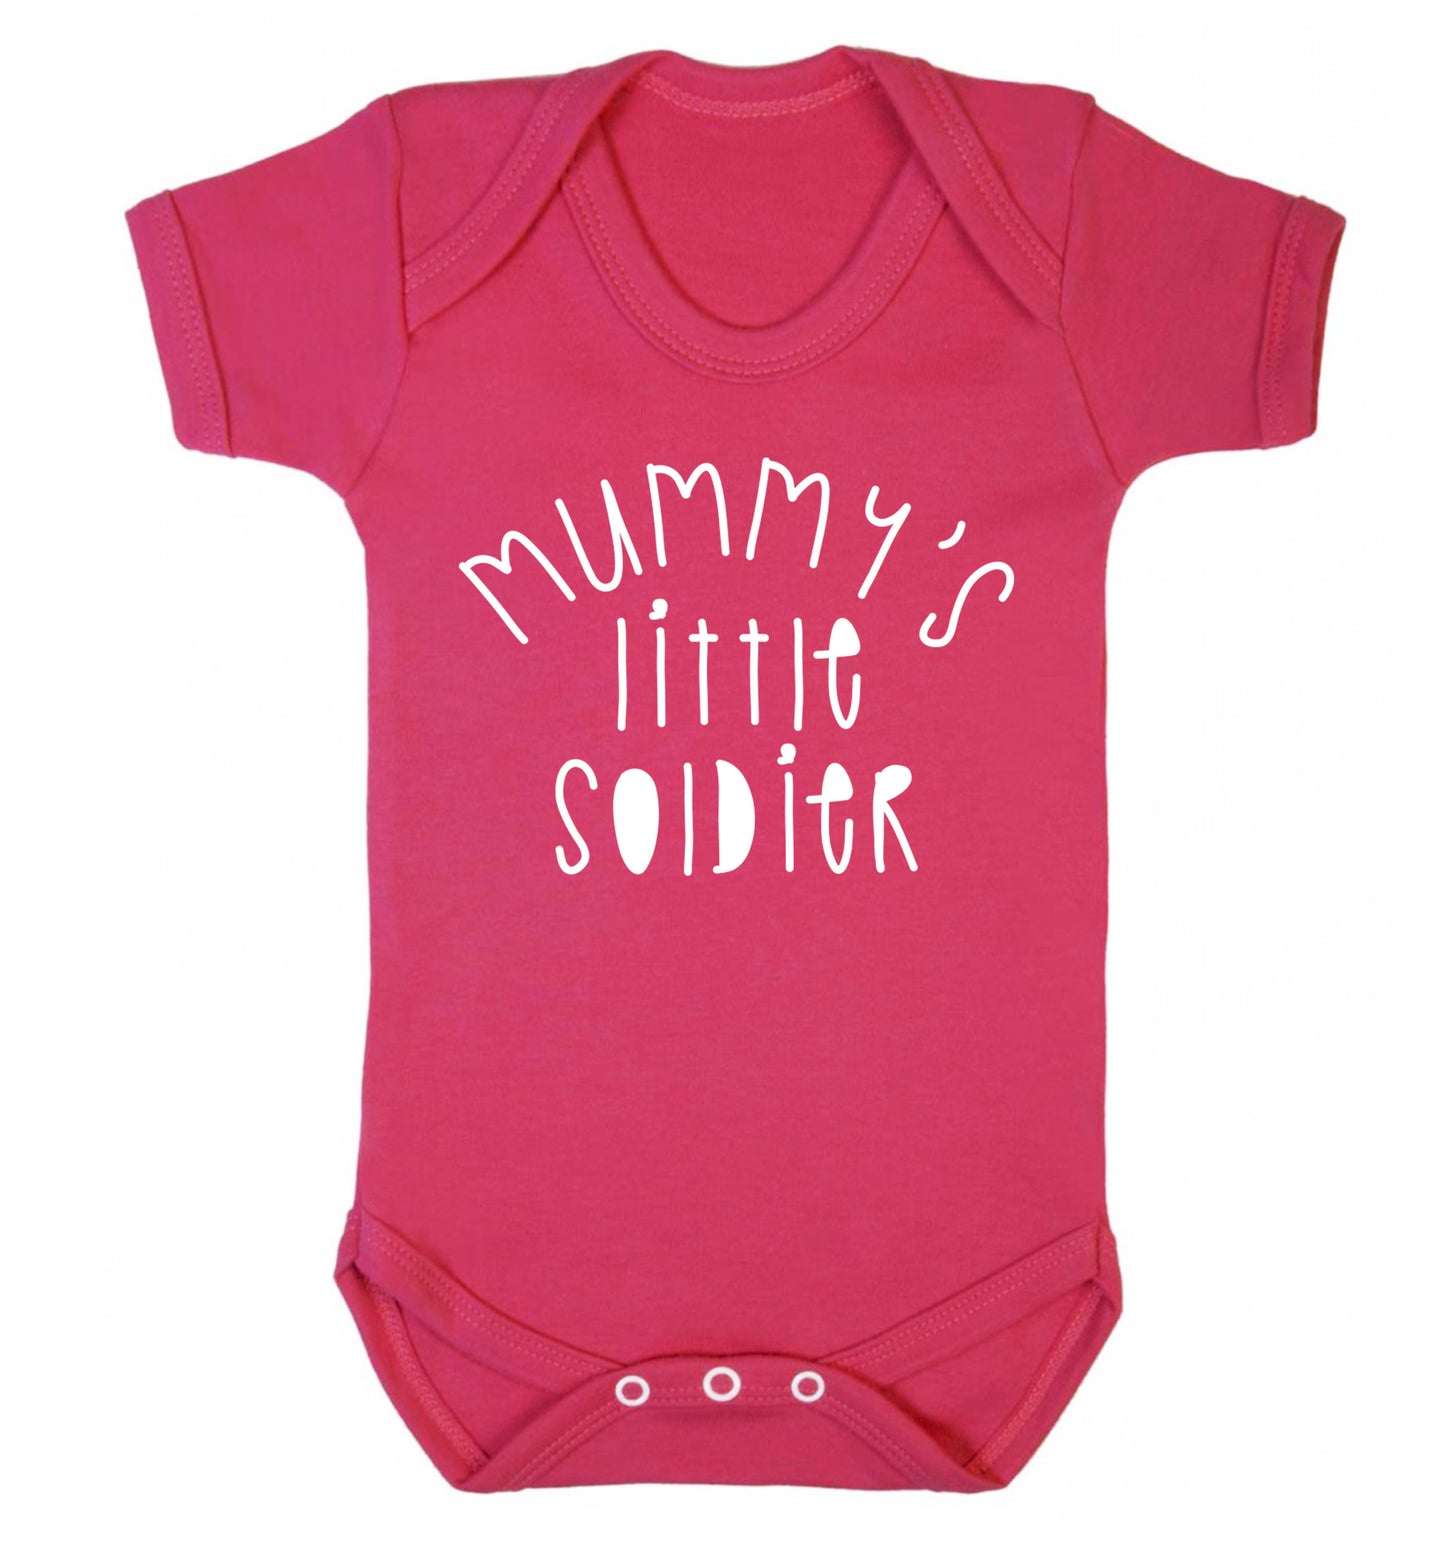 Mummy's little soldier Baby Vest dark pink 18-24 months